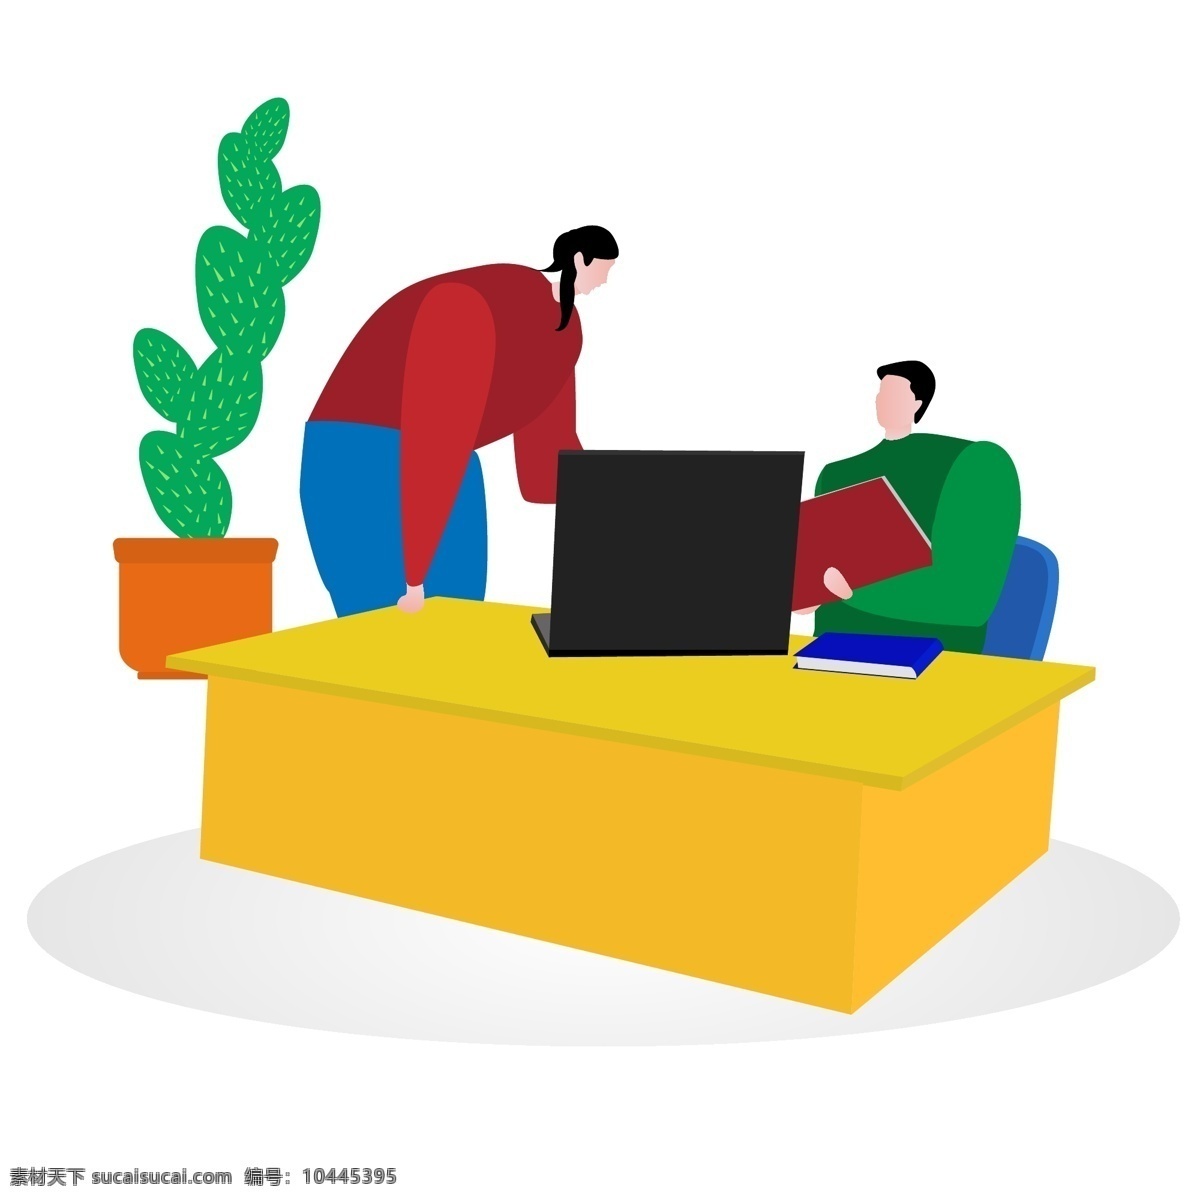 工作 中 男人 女人 矢量 夸张 扁平化 矢量图 认真的 卡通画 ppt装饰 植物 桌子 本子 电脑 白领 办公